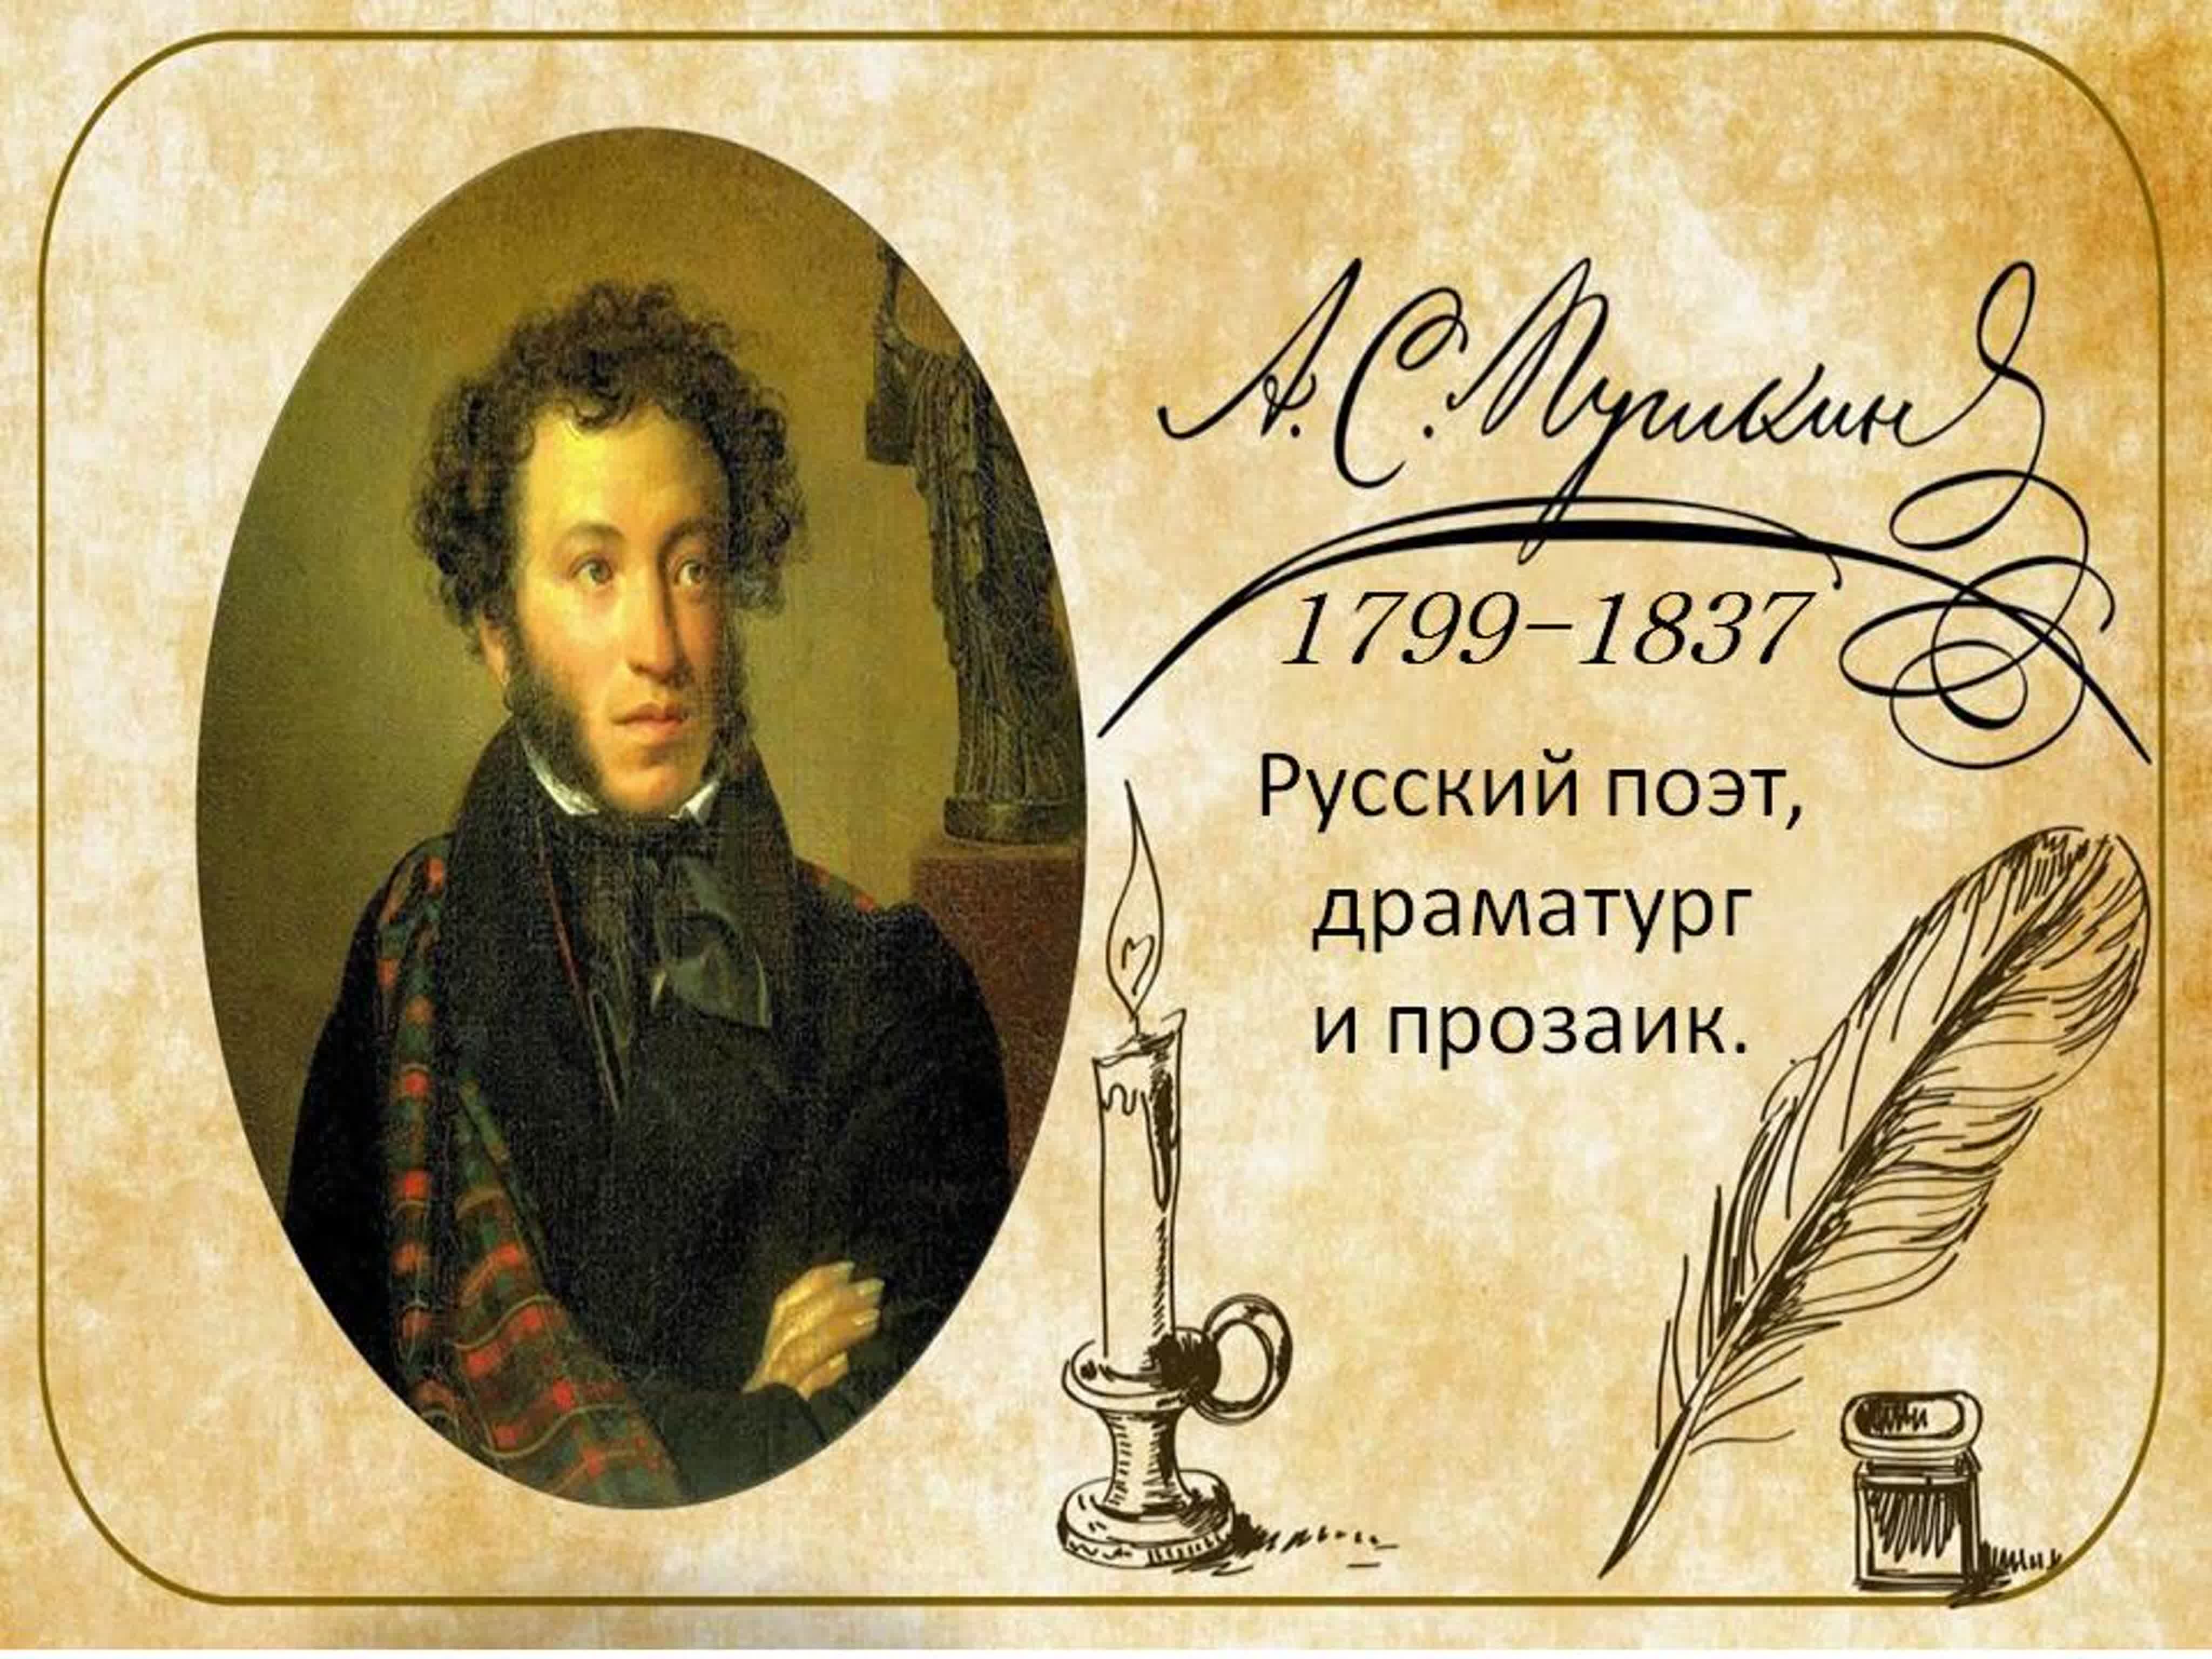 пушкин день памяти